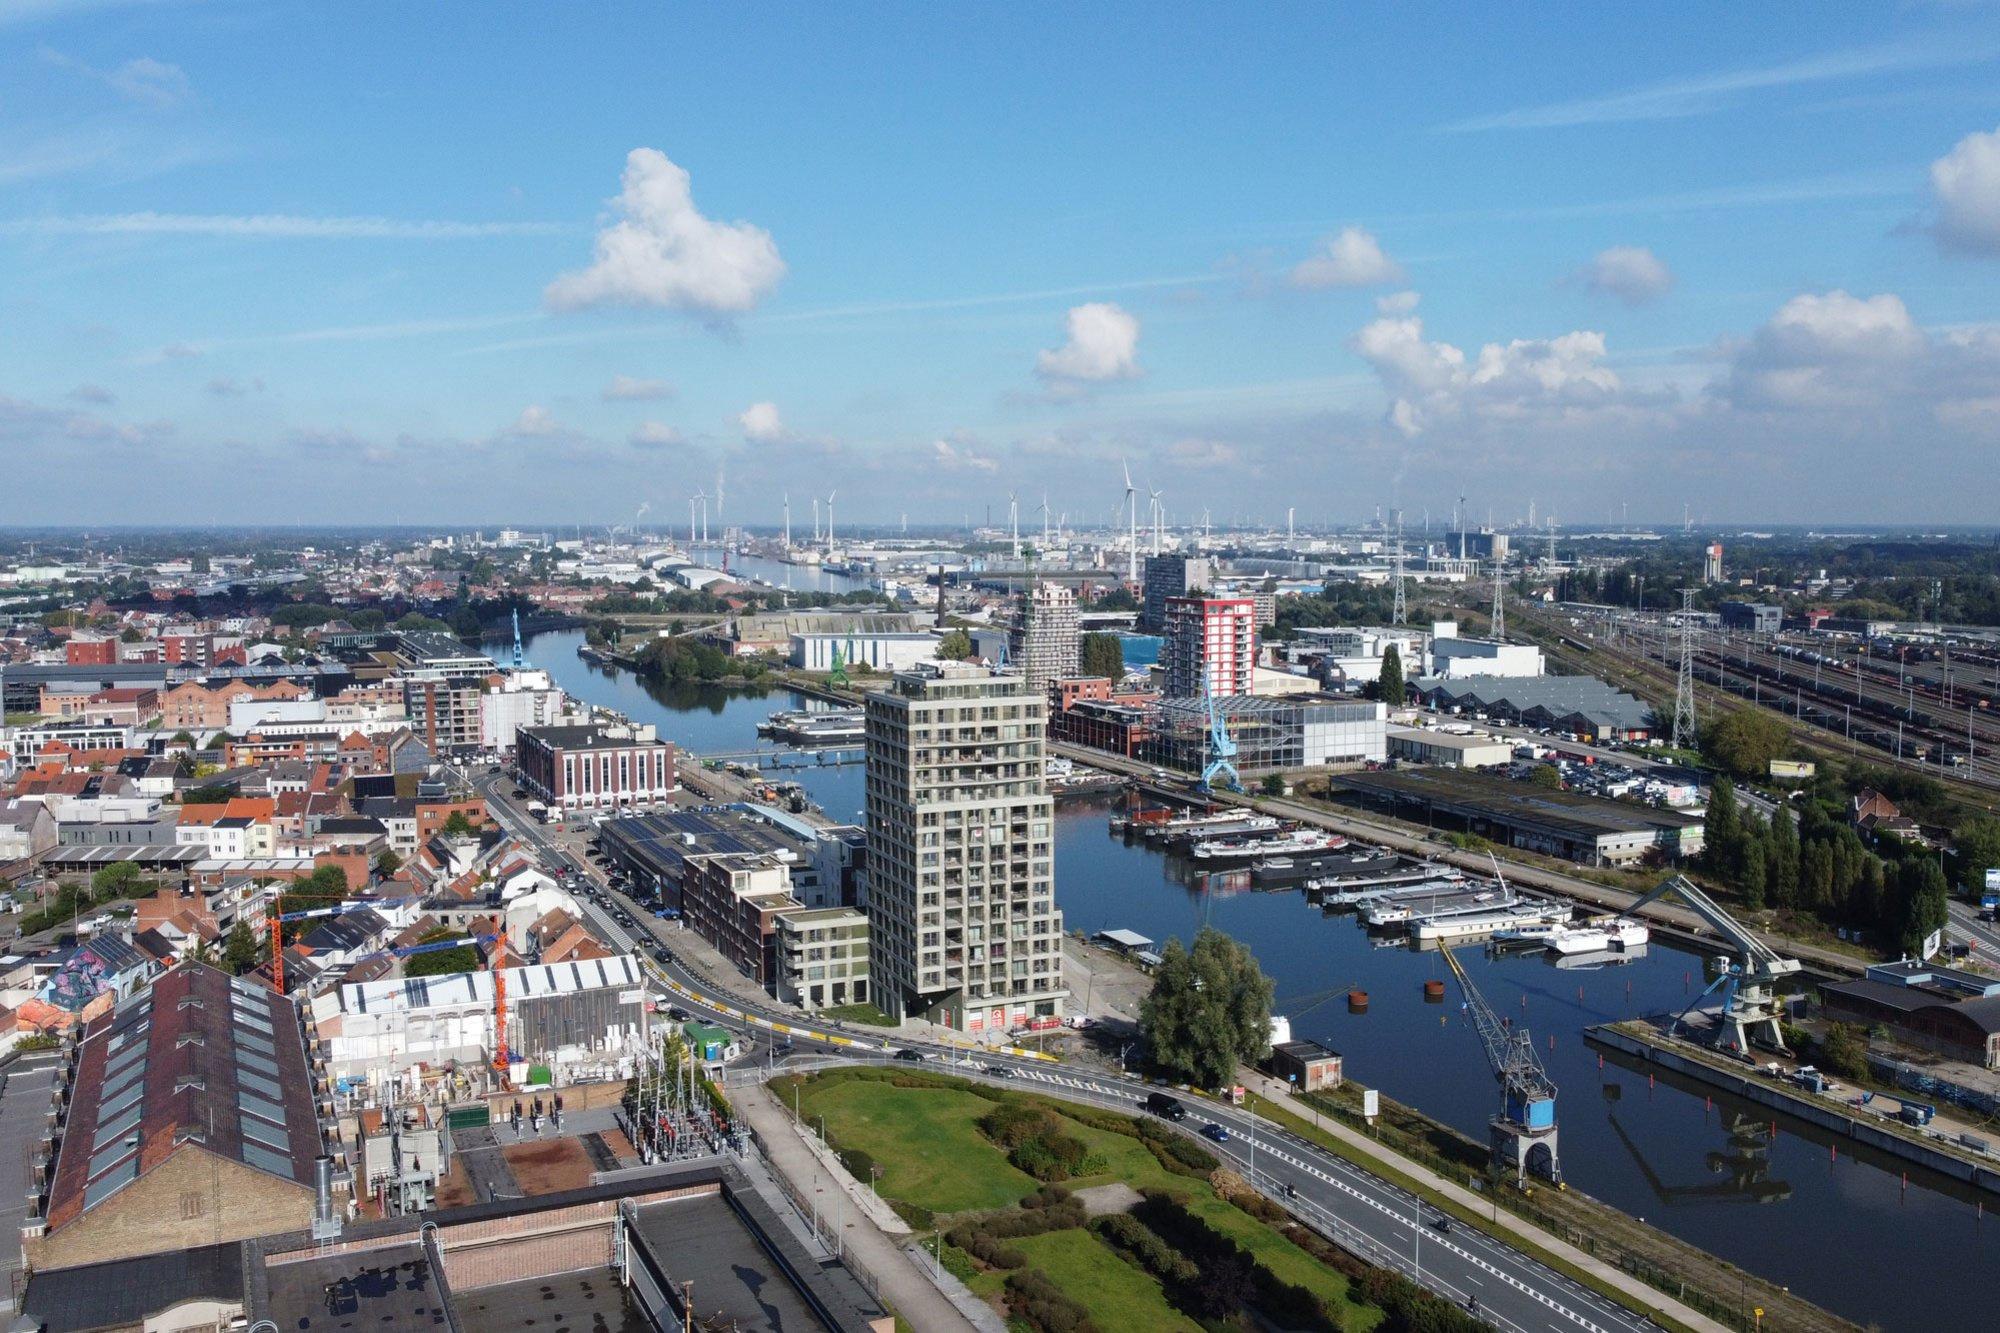 De Nieuwe Dokken n'est qu'une partie d'un projet de rénovation urbaine beaucoup plus vaste, appelé, à tort, De Oude Dokken.